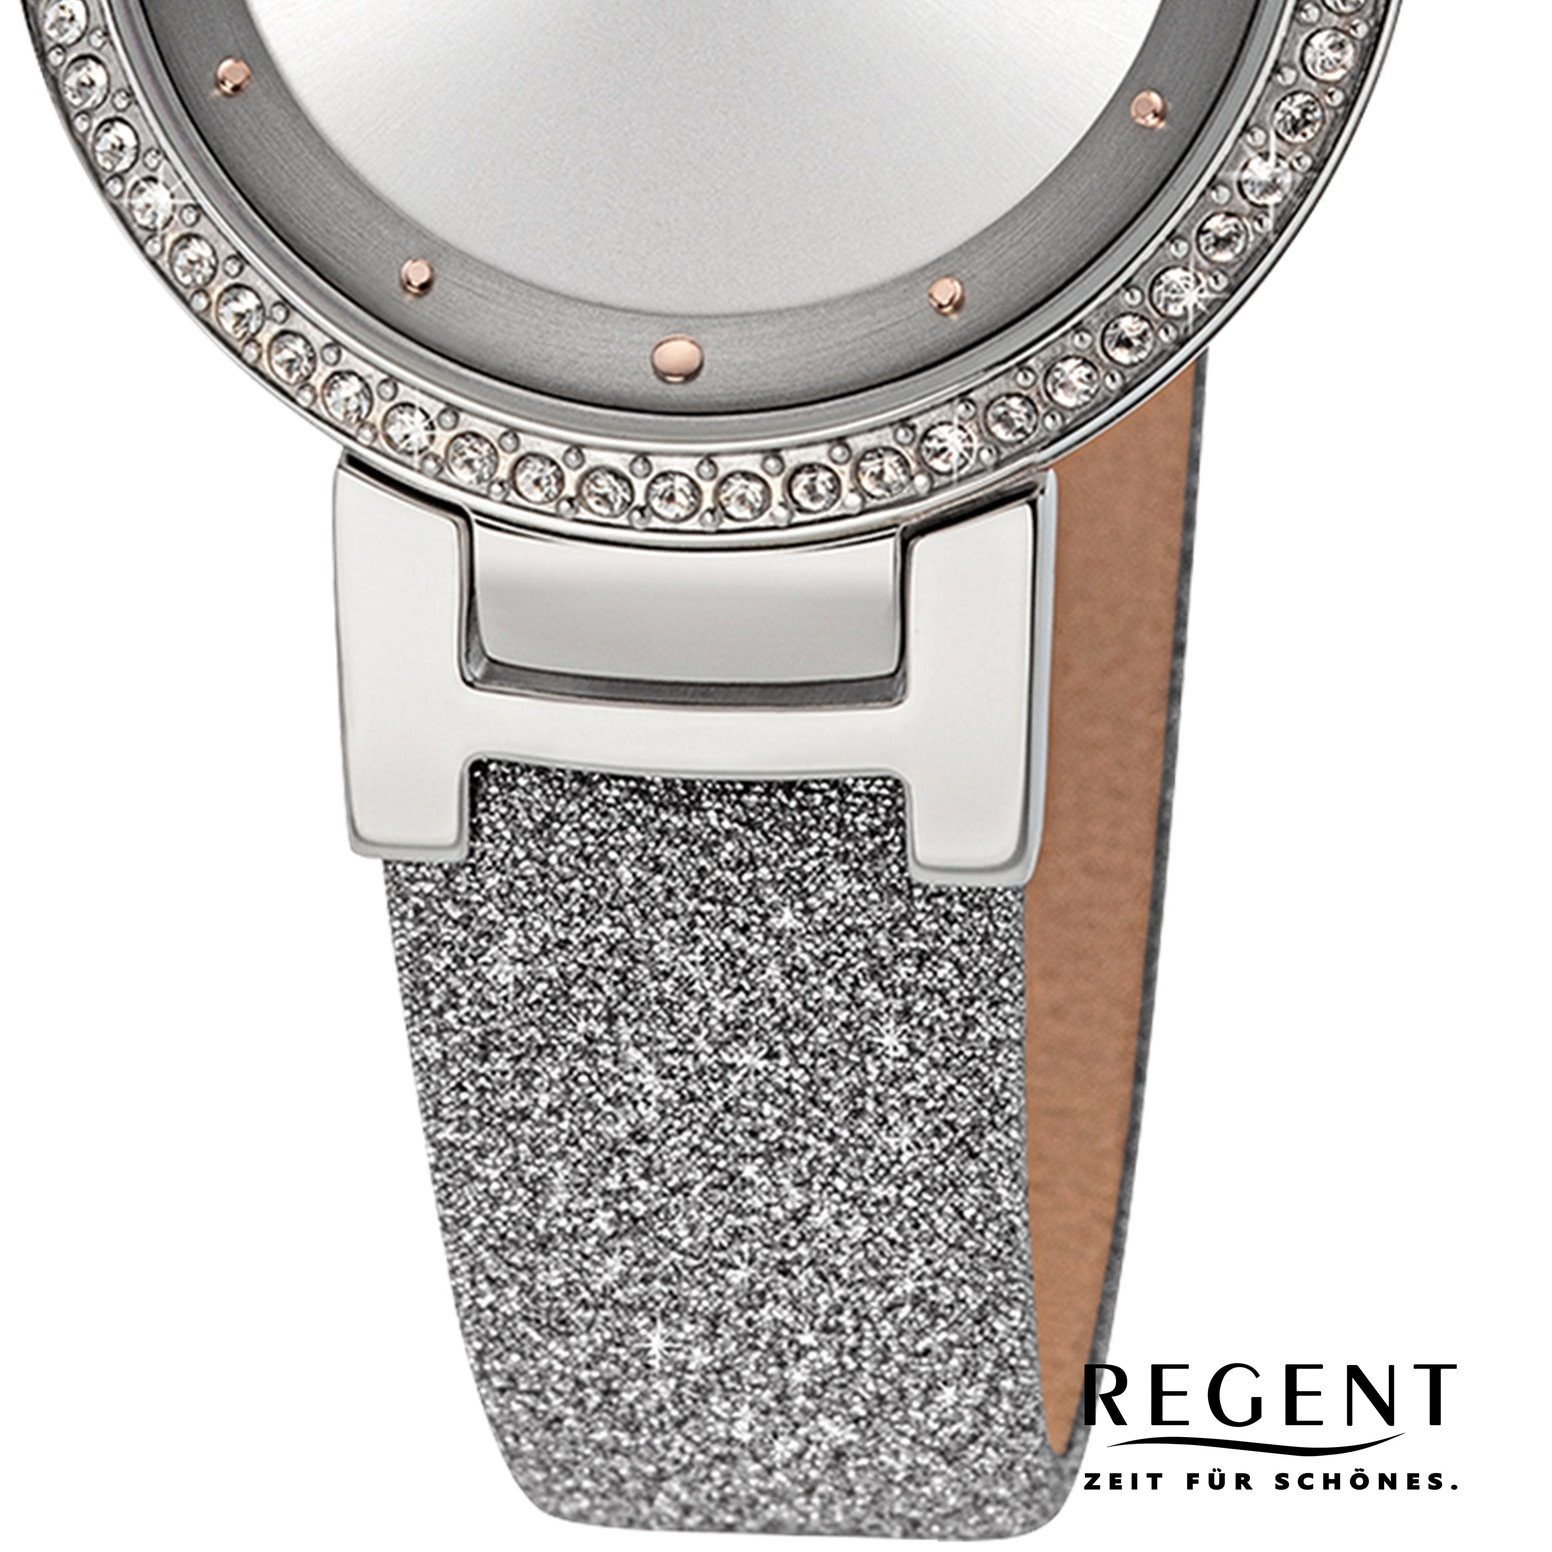 Quarzuhr extra Damen groß Lederarmband Analog, 33mm), Regent rund, Armbanduhr Regent Damen Armbanduhr (ca.